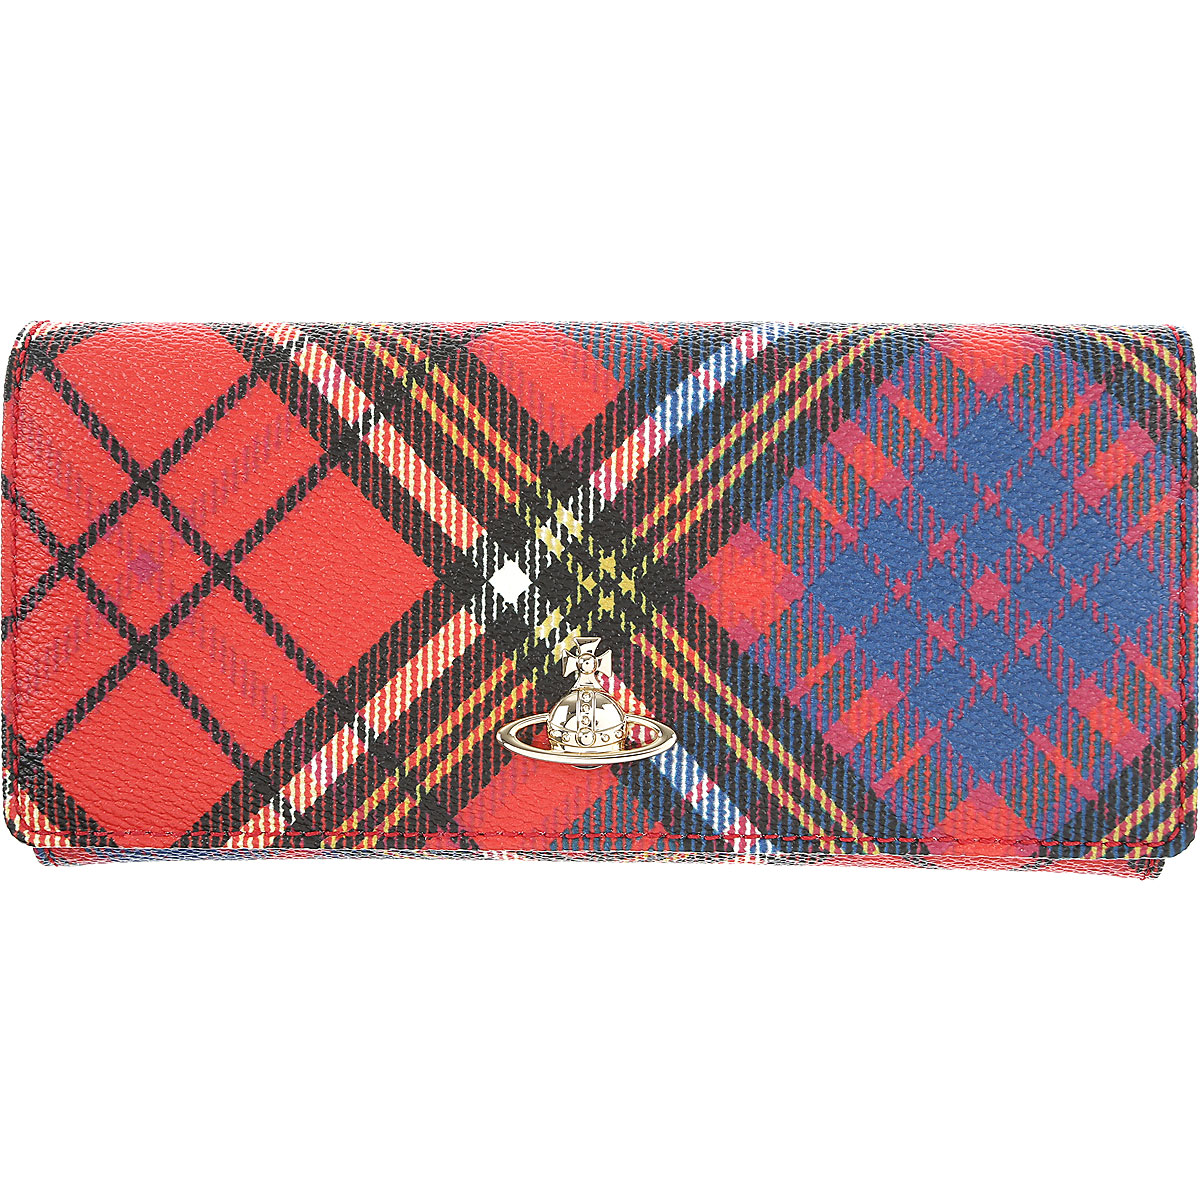 Vivienne Westwood Brieftasche für Damen, Portemonnaie, Geldbörsen, Geldbeutel Günstig im Sale, Rot, Beschichtetes Kanvas, 2017